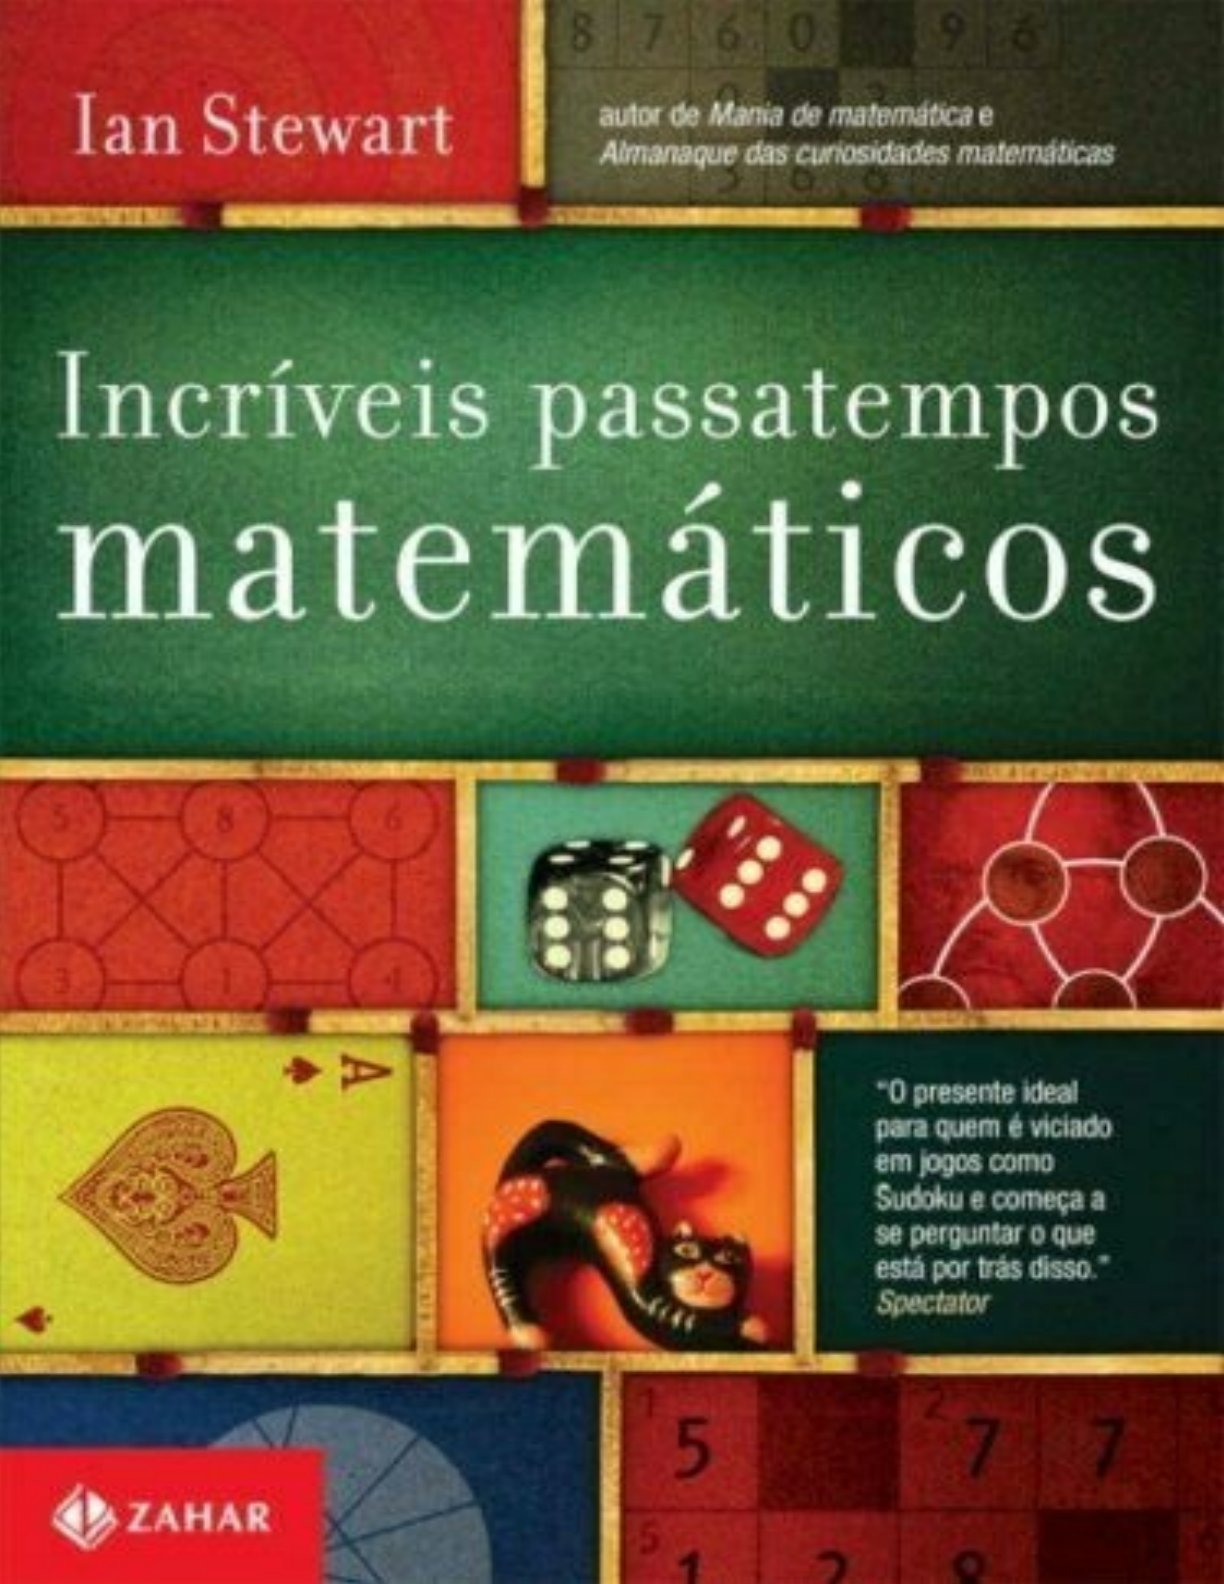  Mania de matemática: Diversão e jogos de lógica e